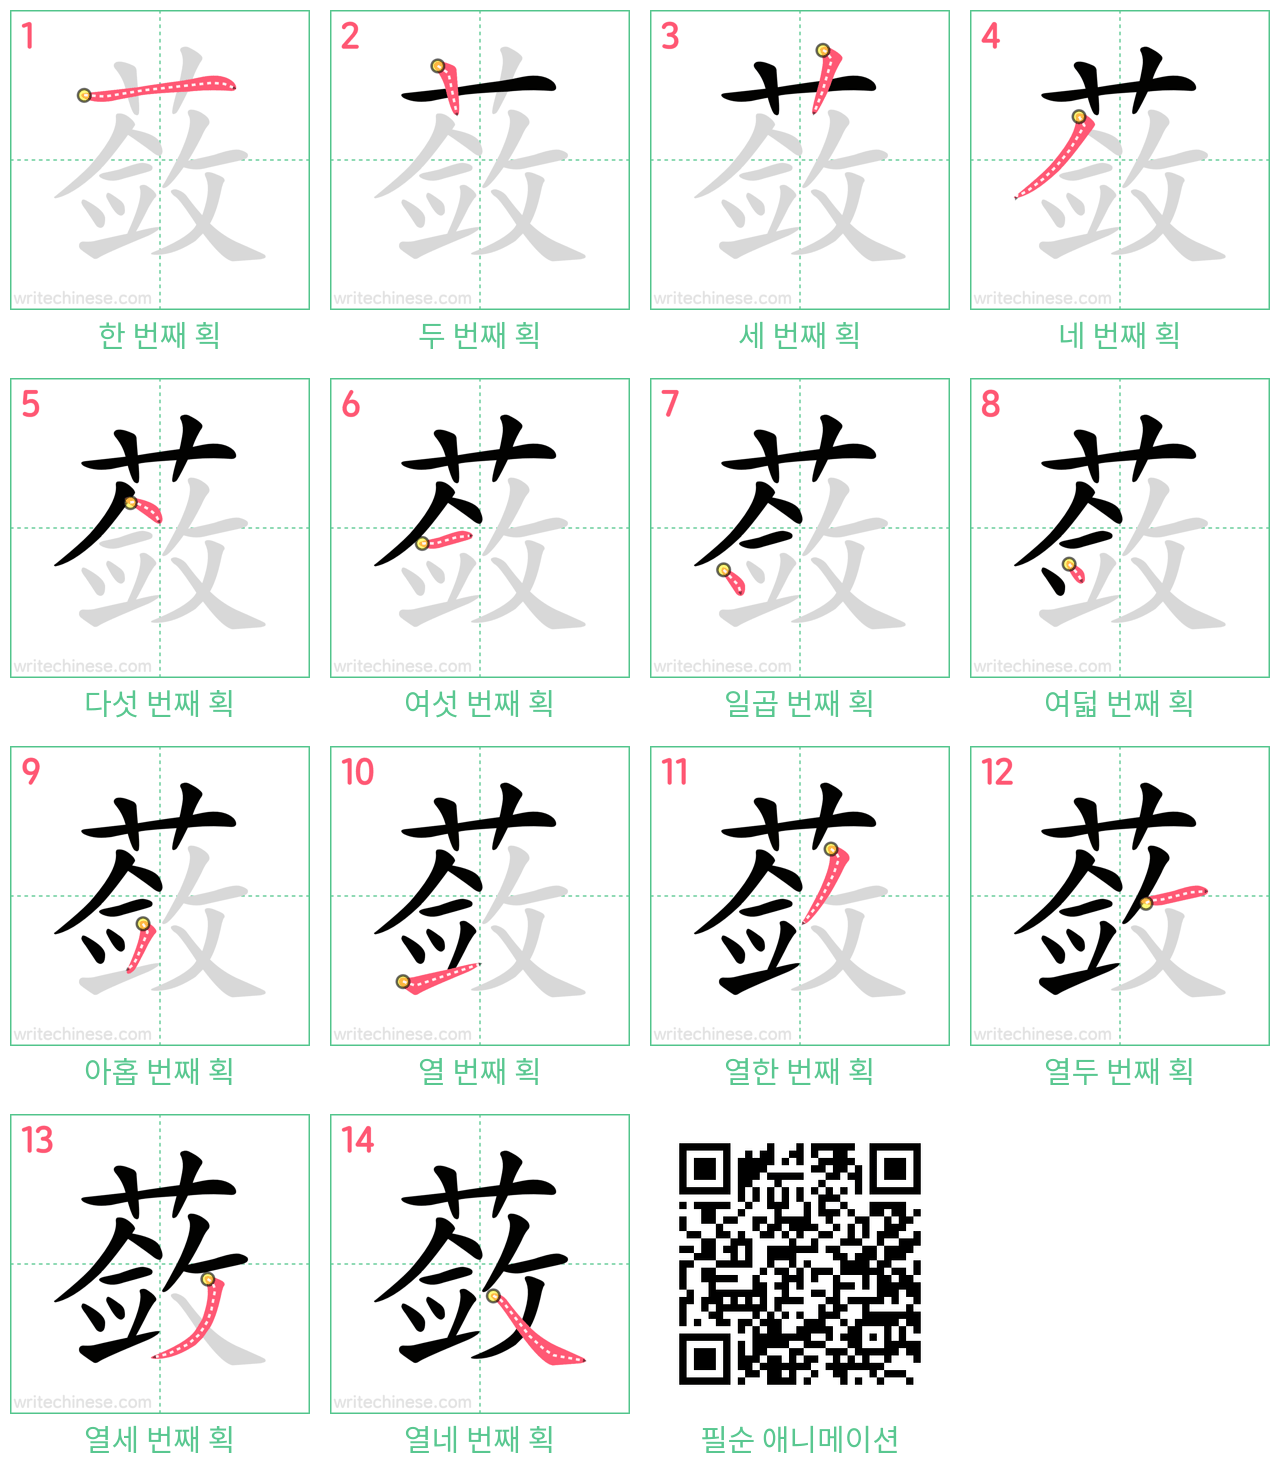 蔹 step-by-step stroke order diagrams